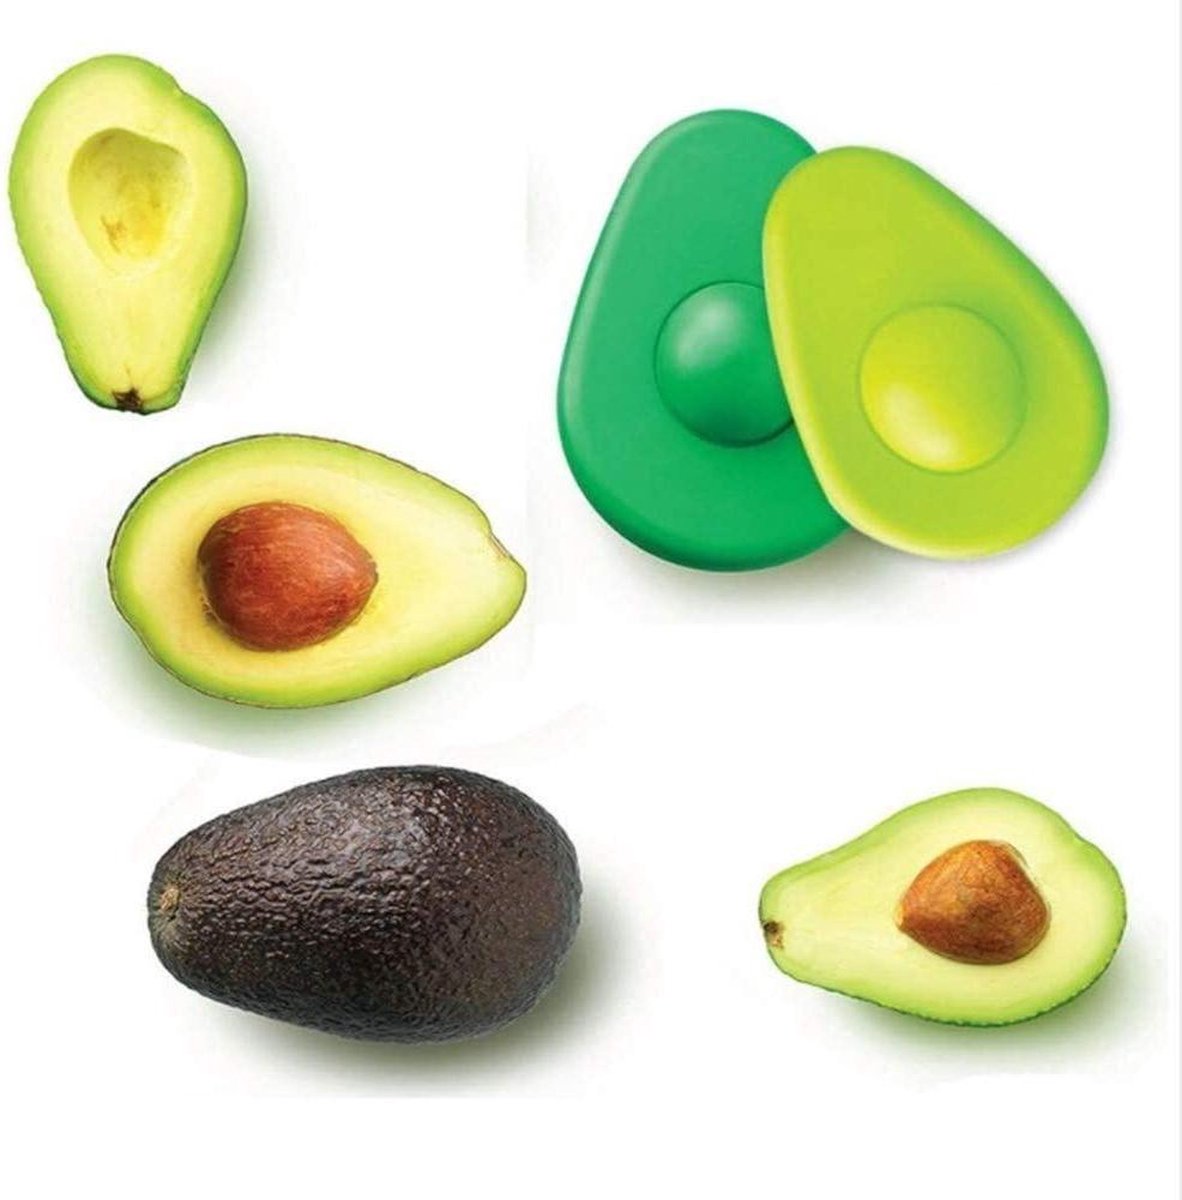 Farberware Food Huggers Avocado Keeper - Spoons N Spice